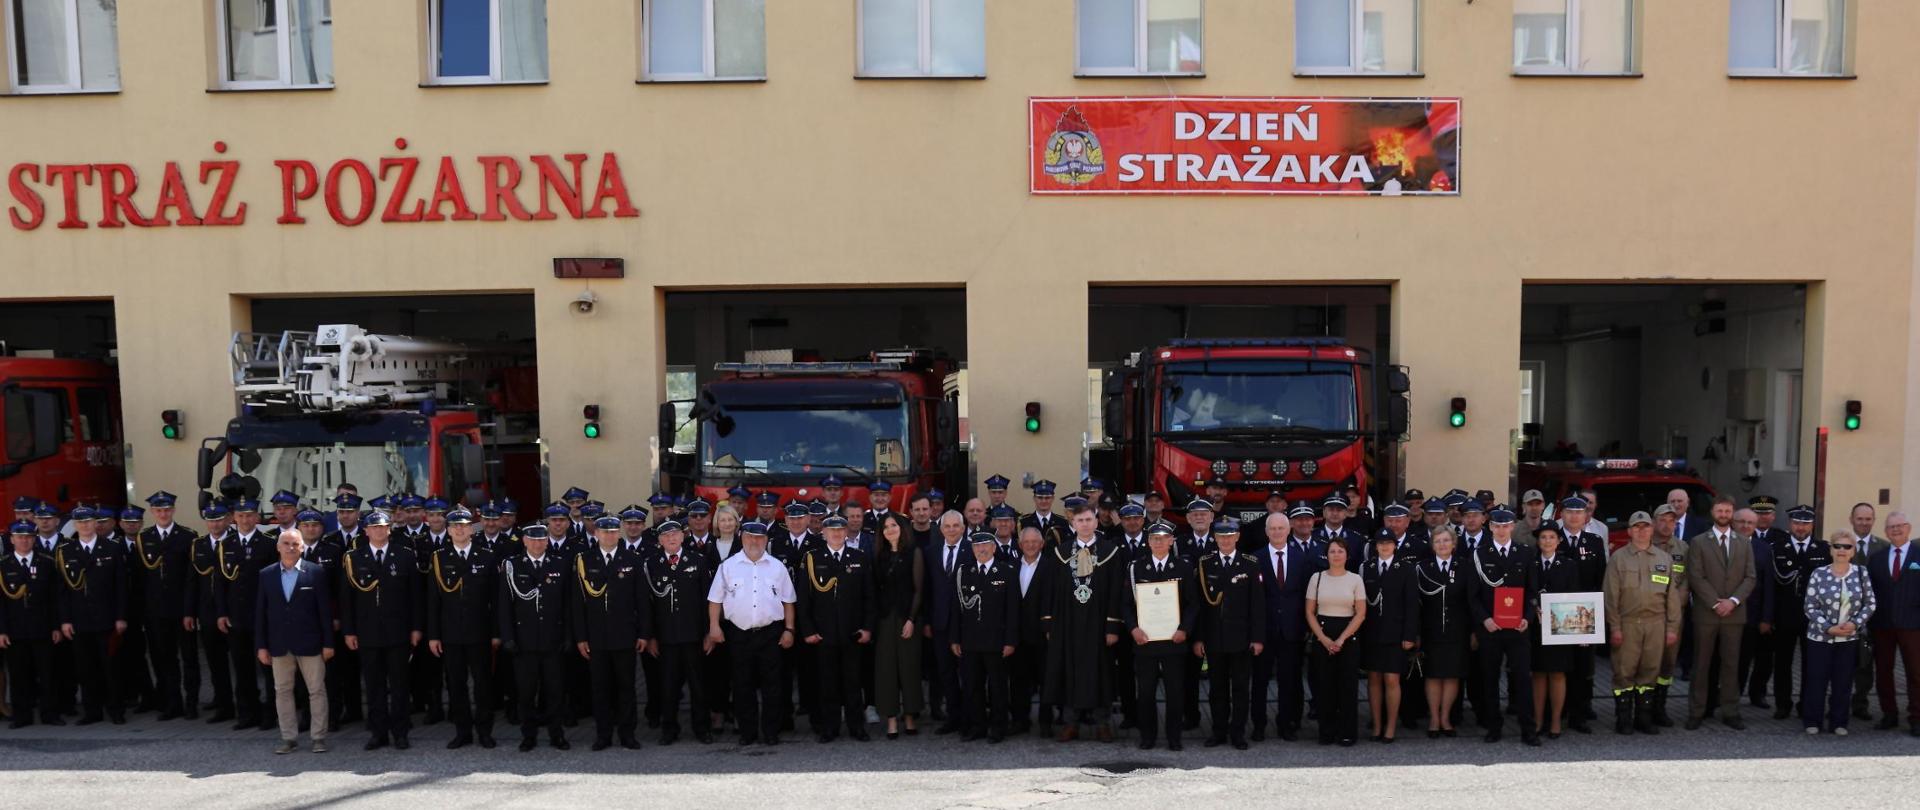 Zdjęcie przedstawia ustawionych przed budynkiem strażaków, na tle samochodów strażackich